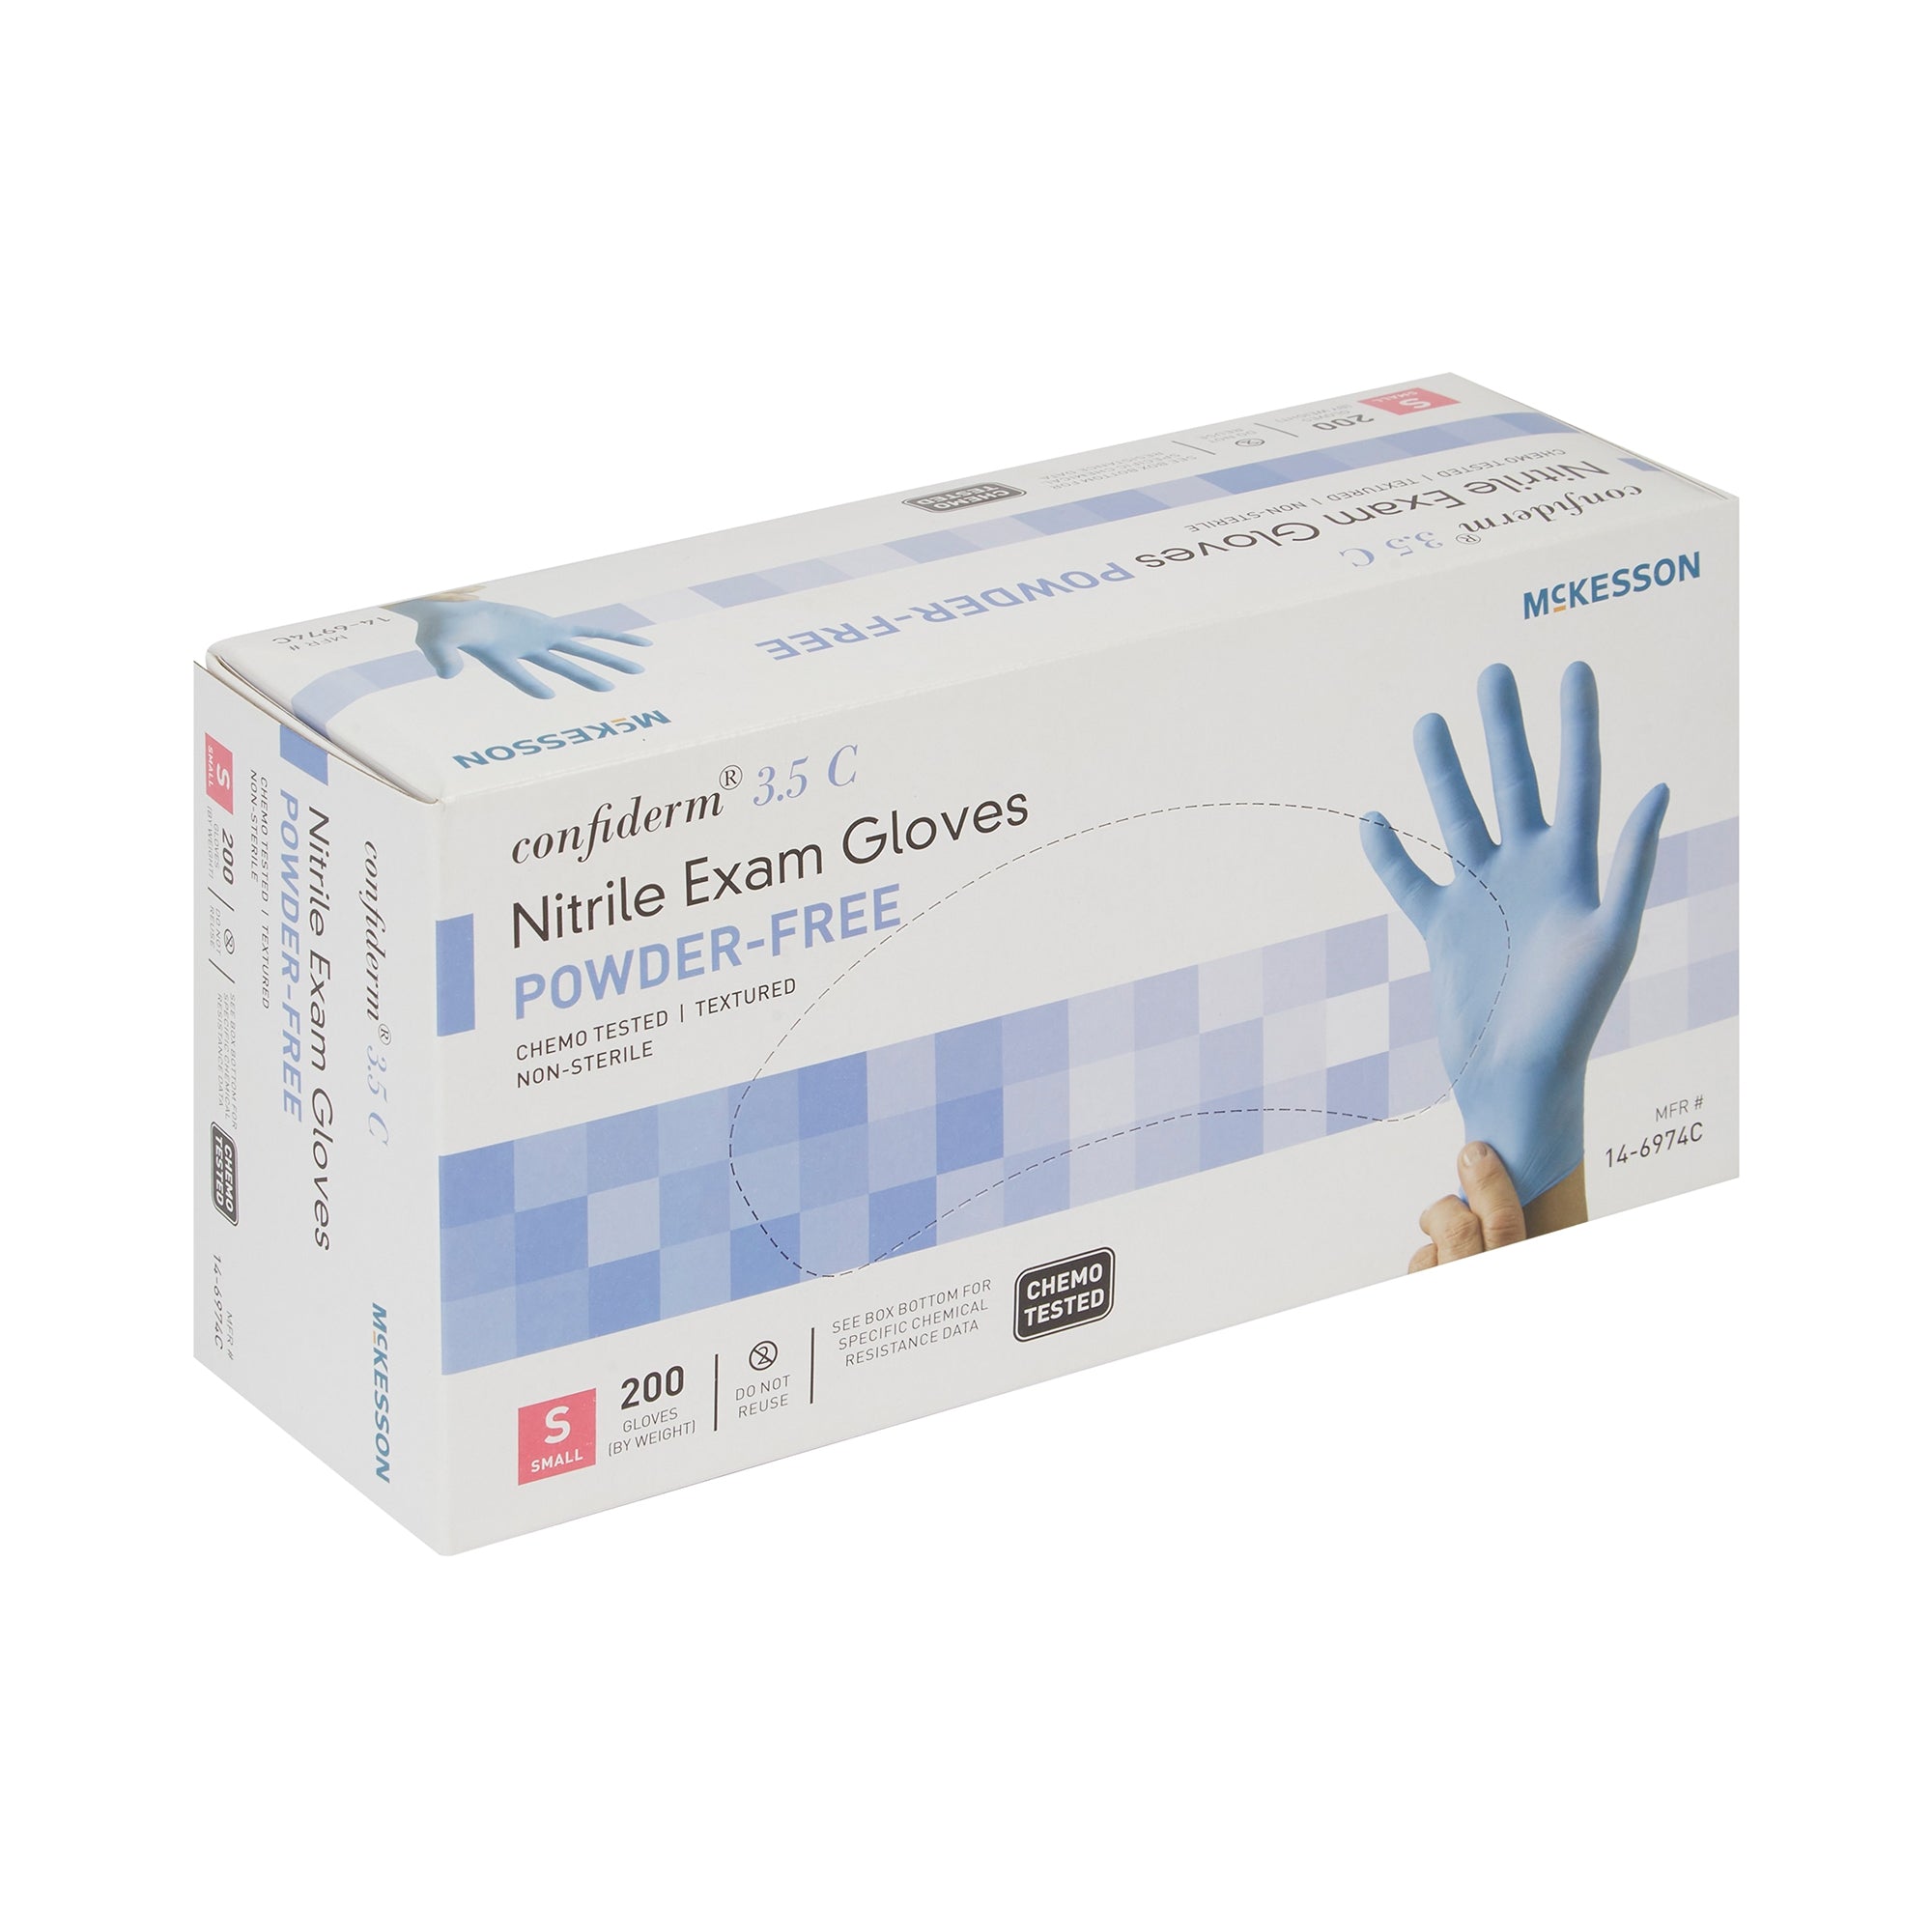 McKesson Confiderm 3.5C Nitrile Gloves, Small, Blue - 200 Pack
po